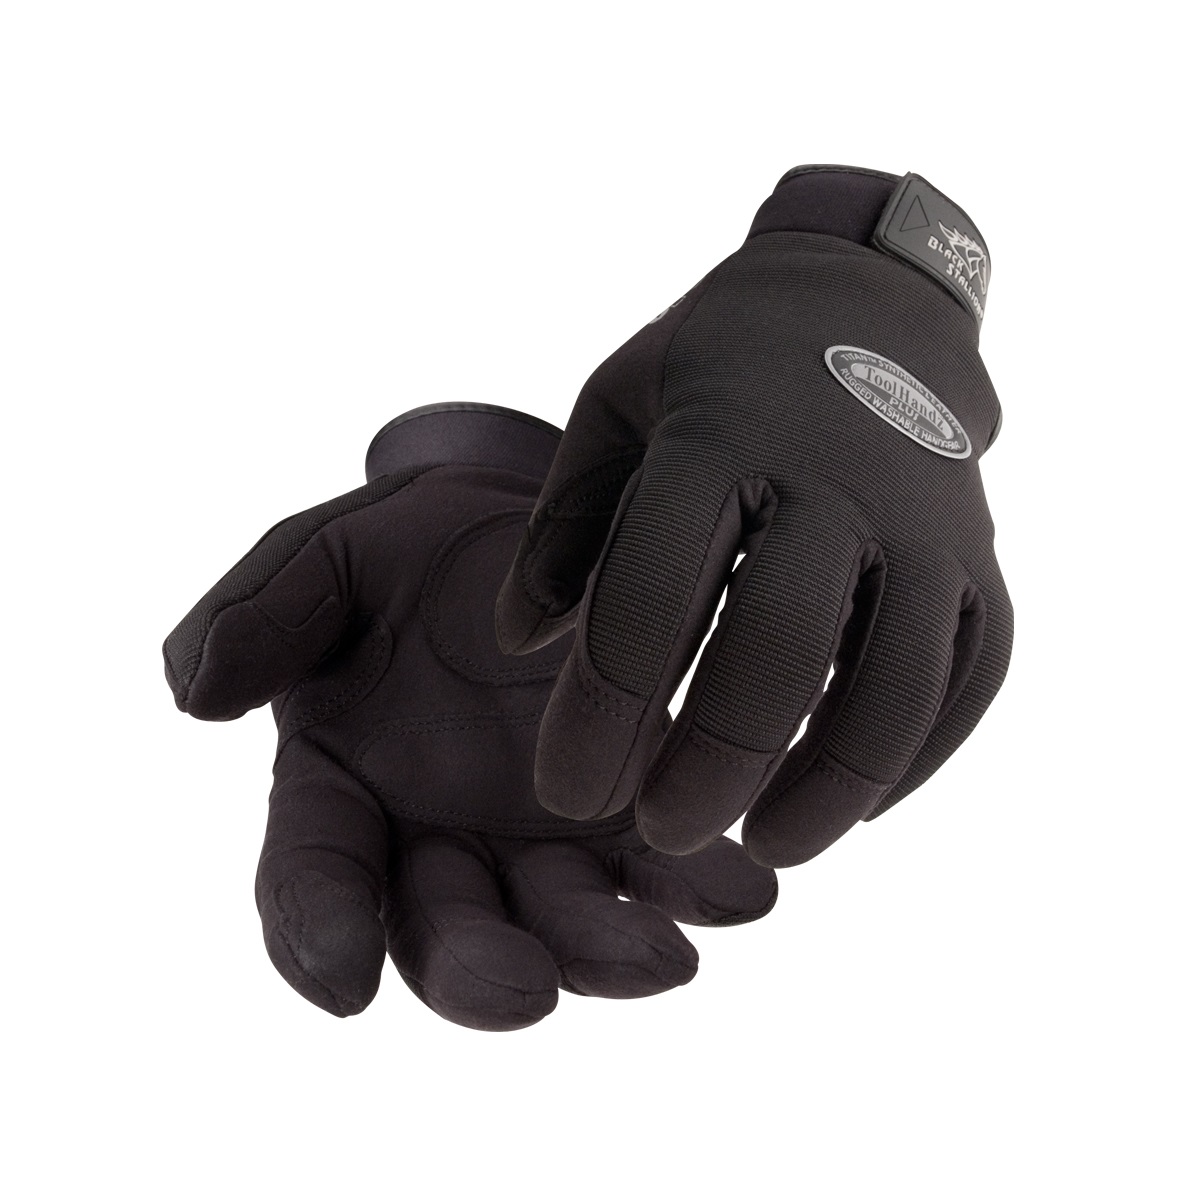 ToolHandz® Plus Original Mechanics Glove